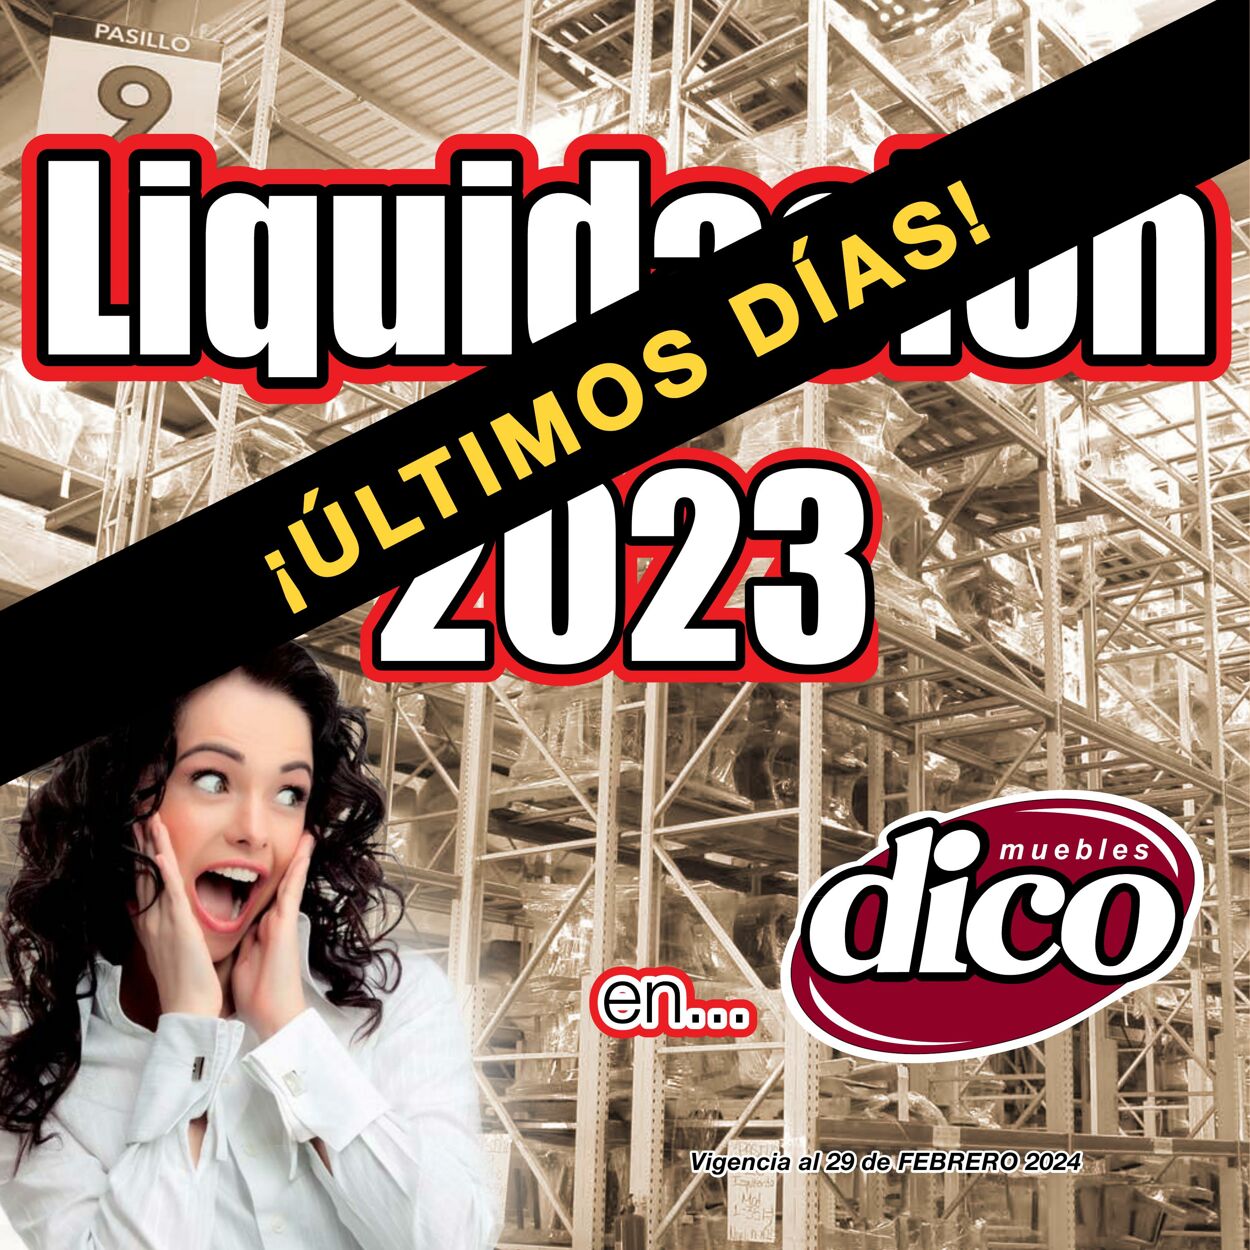 Catálogo Muebles Dico - MUEBLES DICO - LIQUIDACION |  BAJIO  | FEBRERO 2024 - Página 1 1 feb., 2024 - 29 feb., 2024